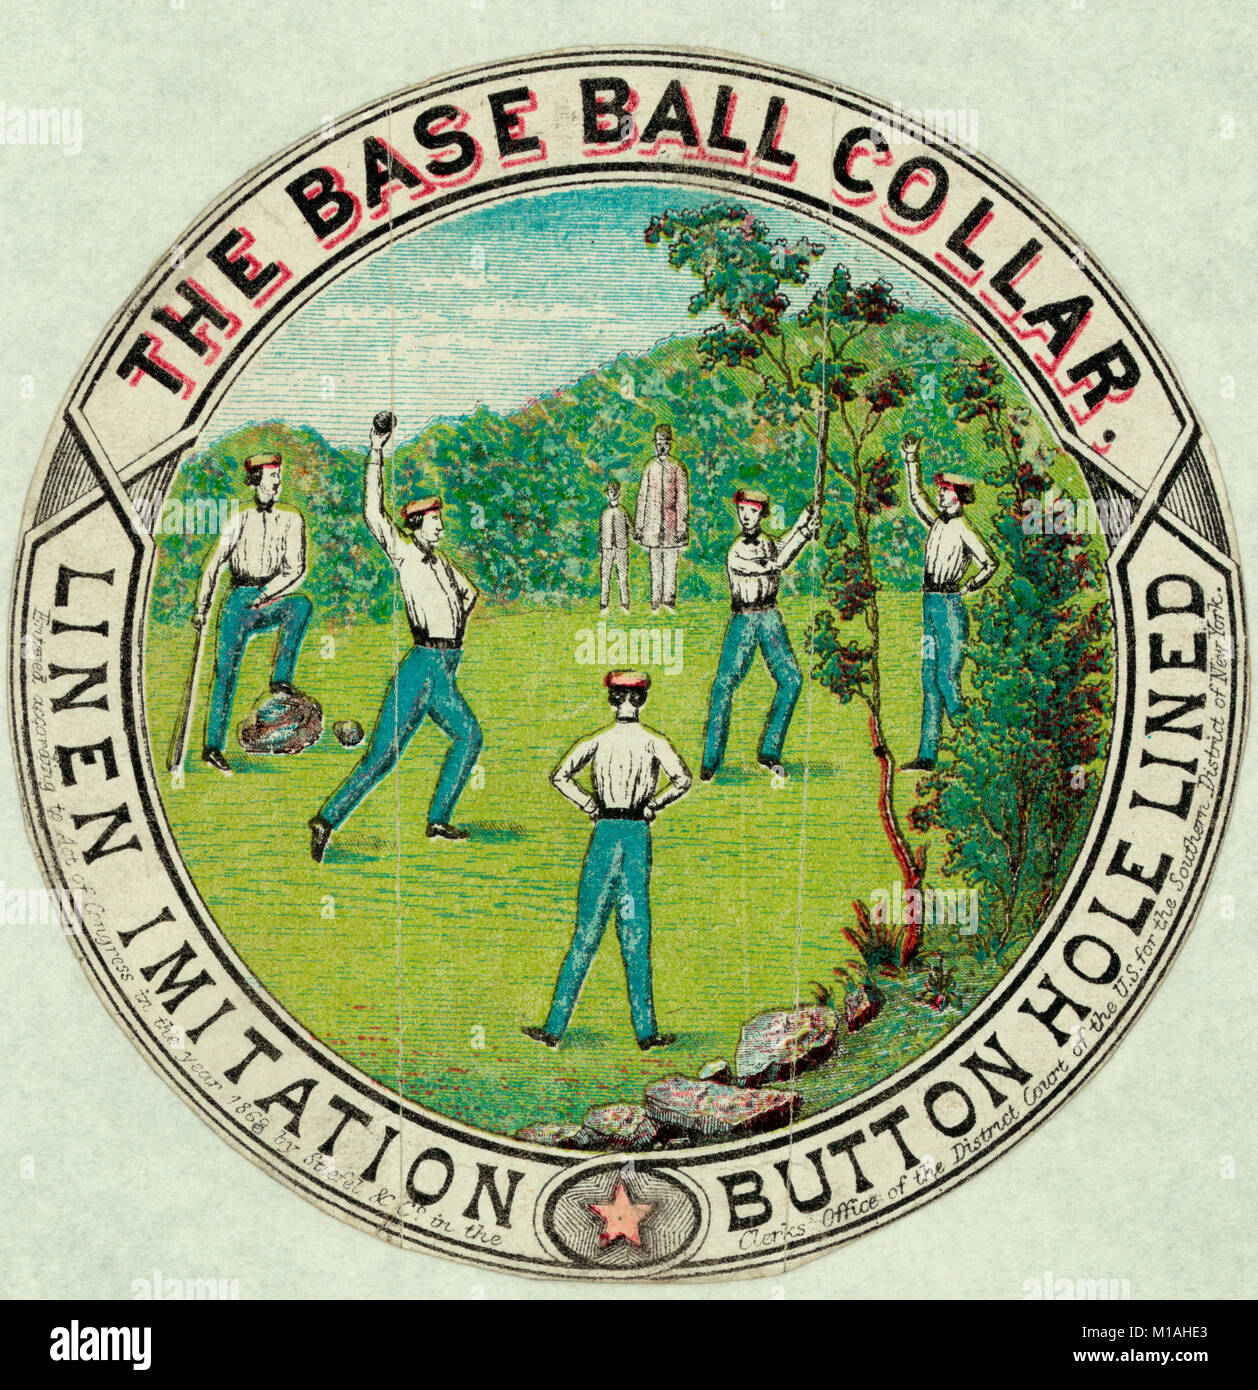 Die base ball Kragen - die Männer, die Uniformen tragen mit Kragen beim Baseball Spiel. Werbung, ca. 1869 Stockfoto